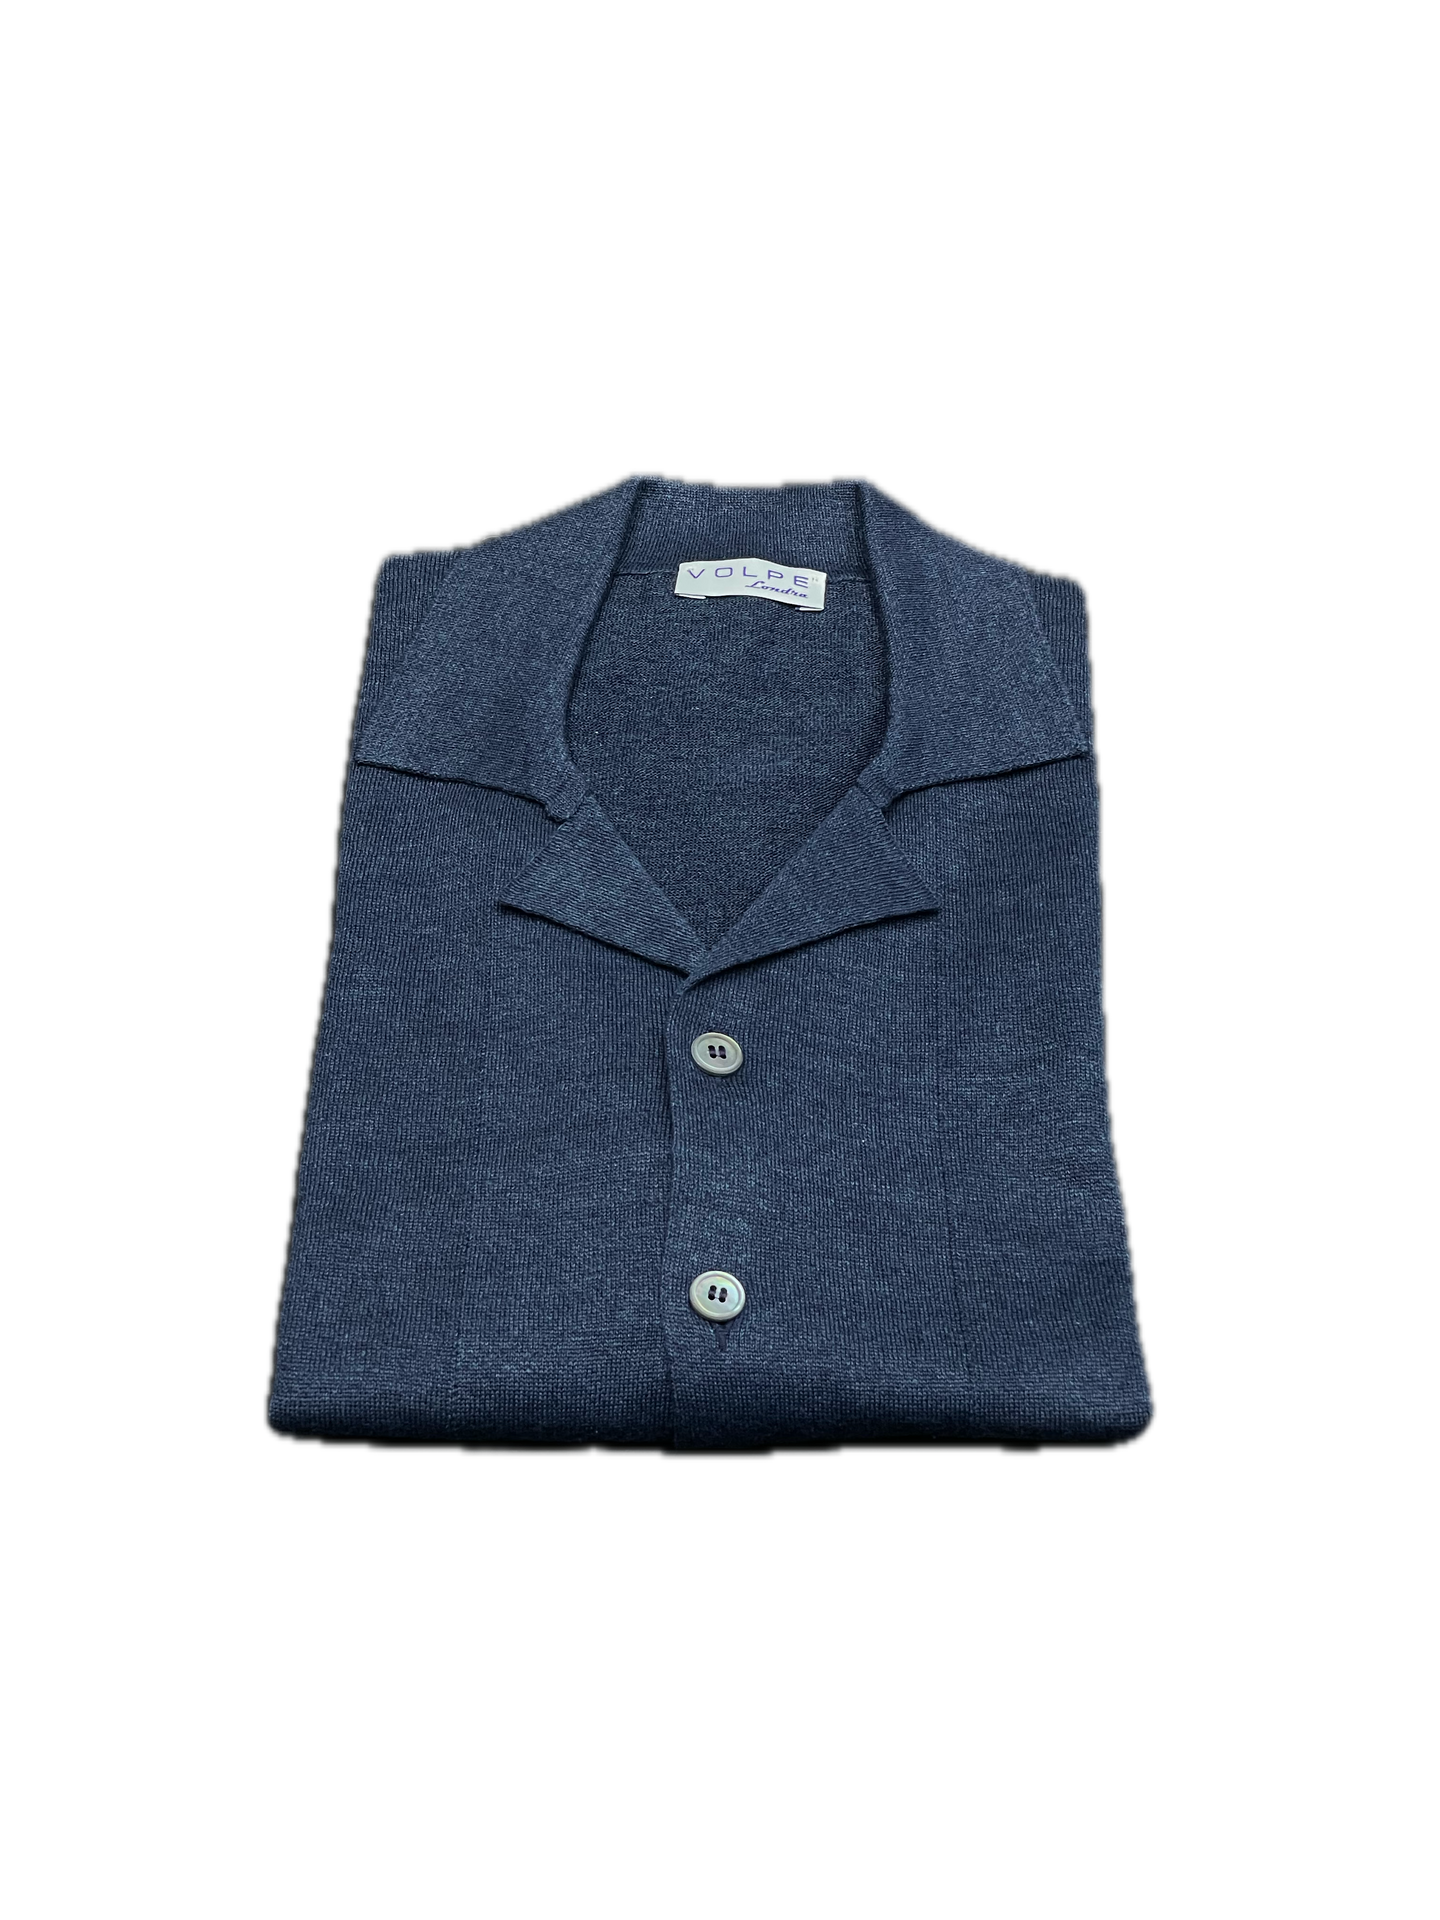 68% Linen 32% Cotton Lightweight Short Sleeved Shirt